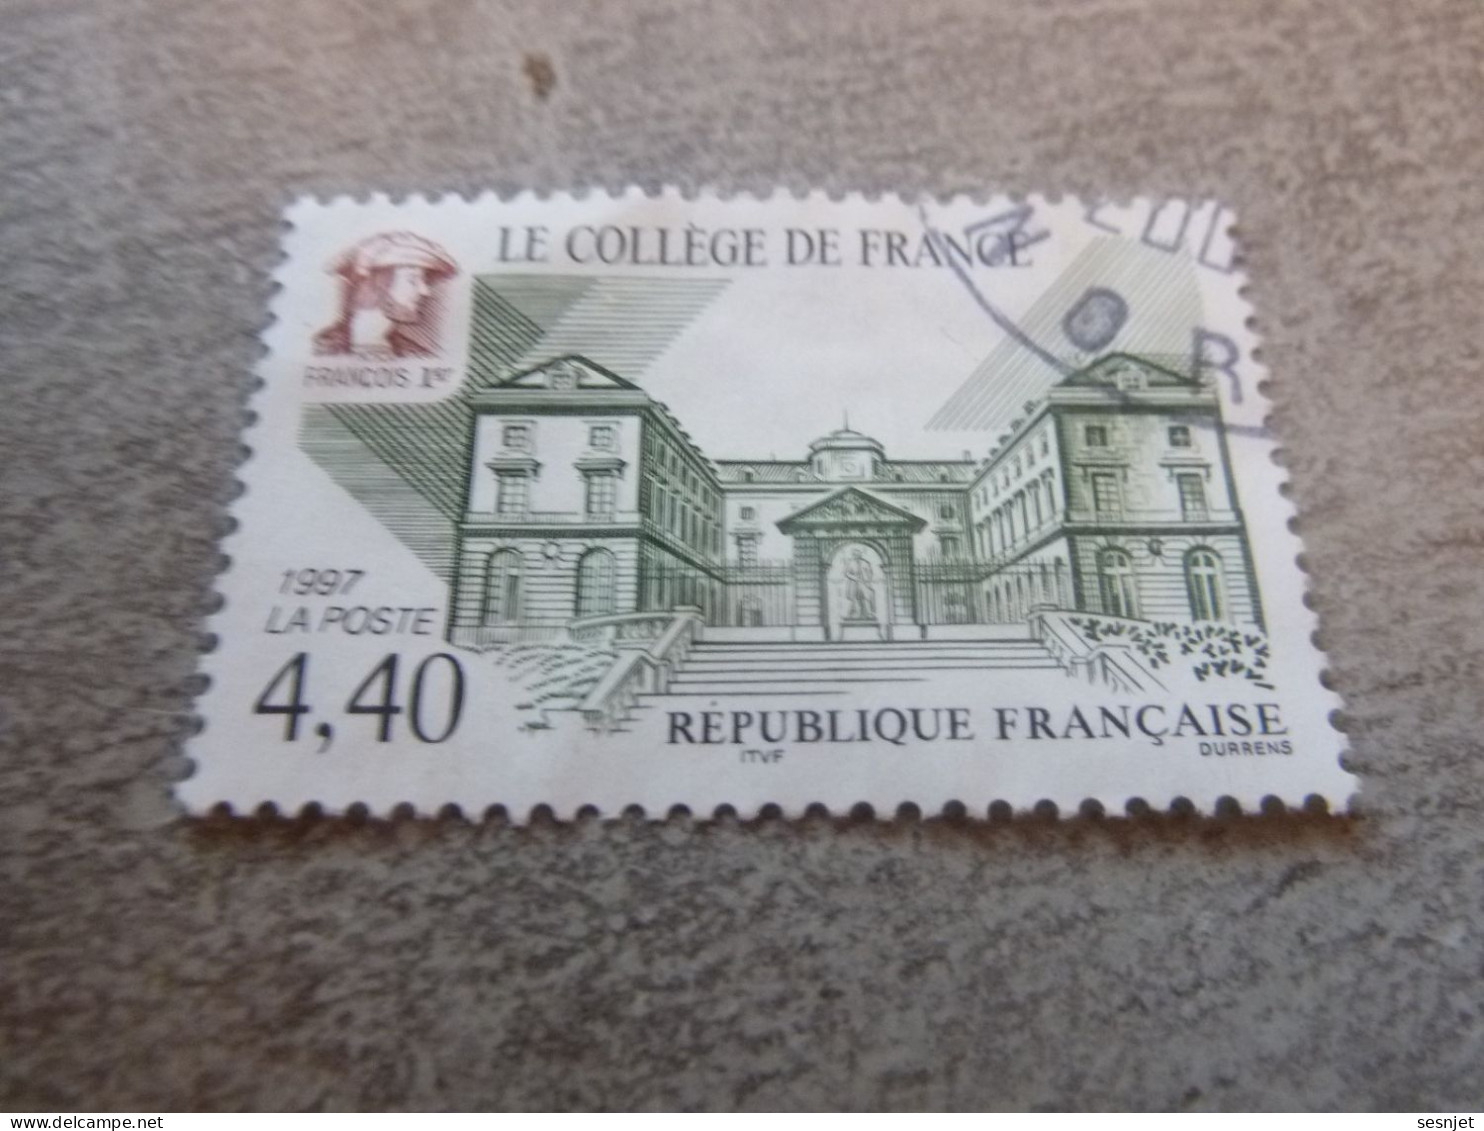 Le Collège De France - 4f.40 - Yt 3114 - Vert, Brun Et Noir - Oblitéré - Année 1997 - - Used Stamps